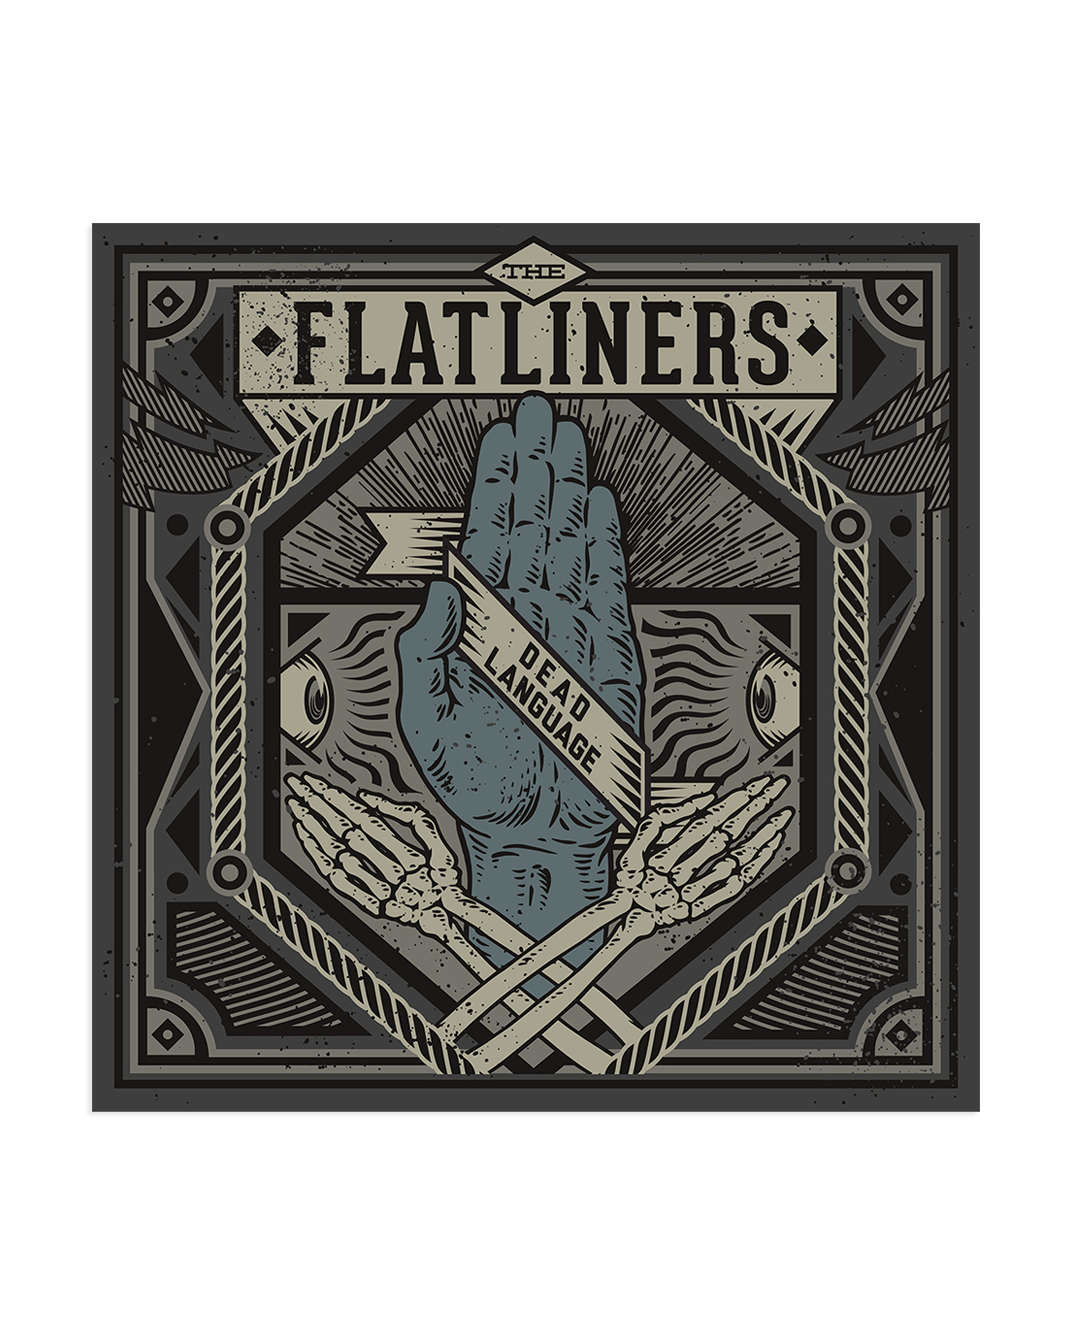 The Flatliners Dead Language LP